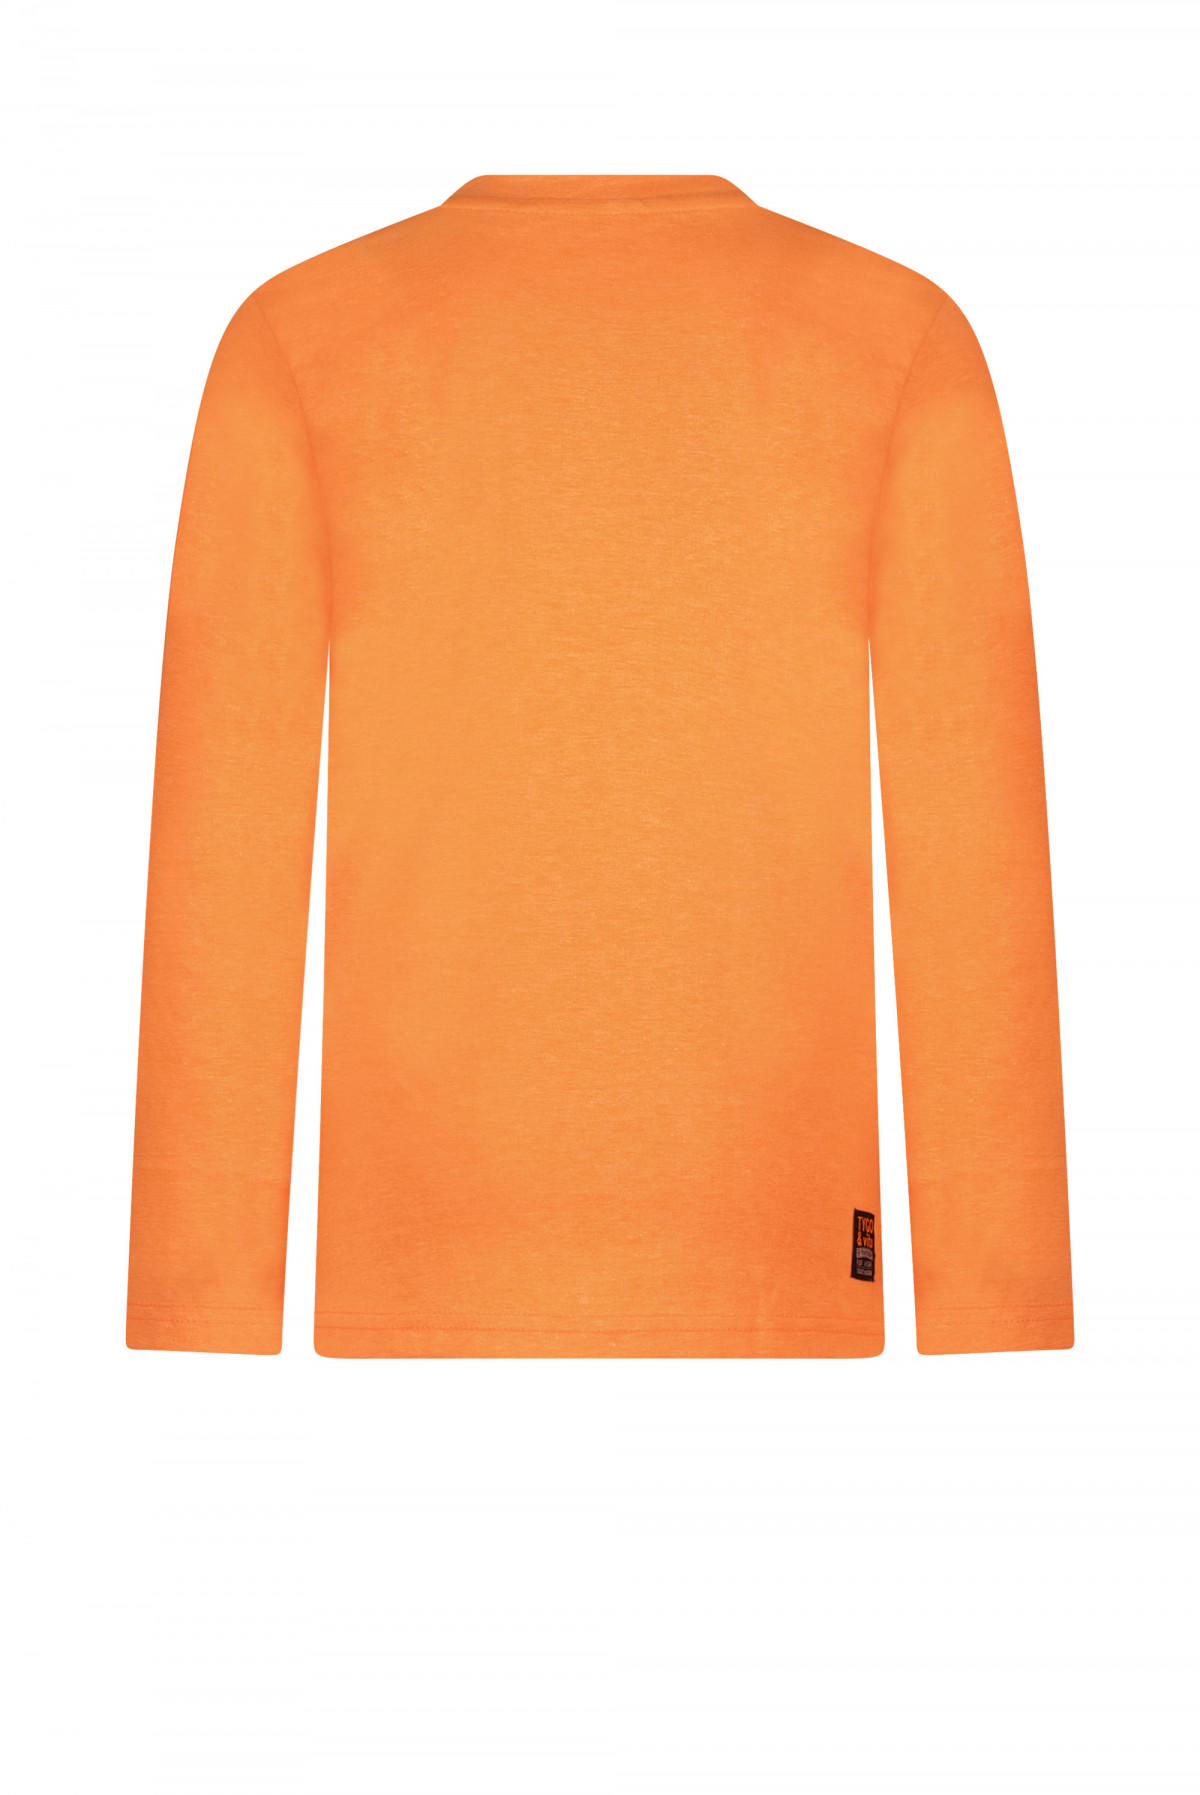 T-shirt manches longues orange - Logo - Boutique Toup'tibou - photo 7